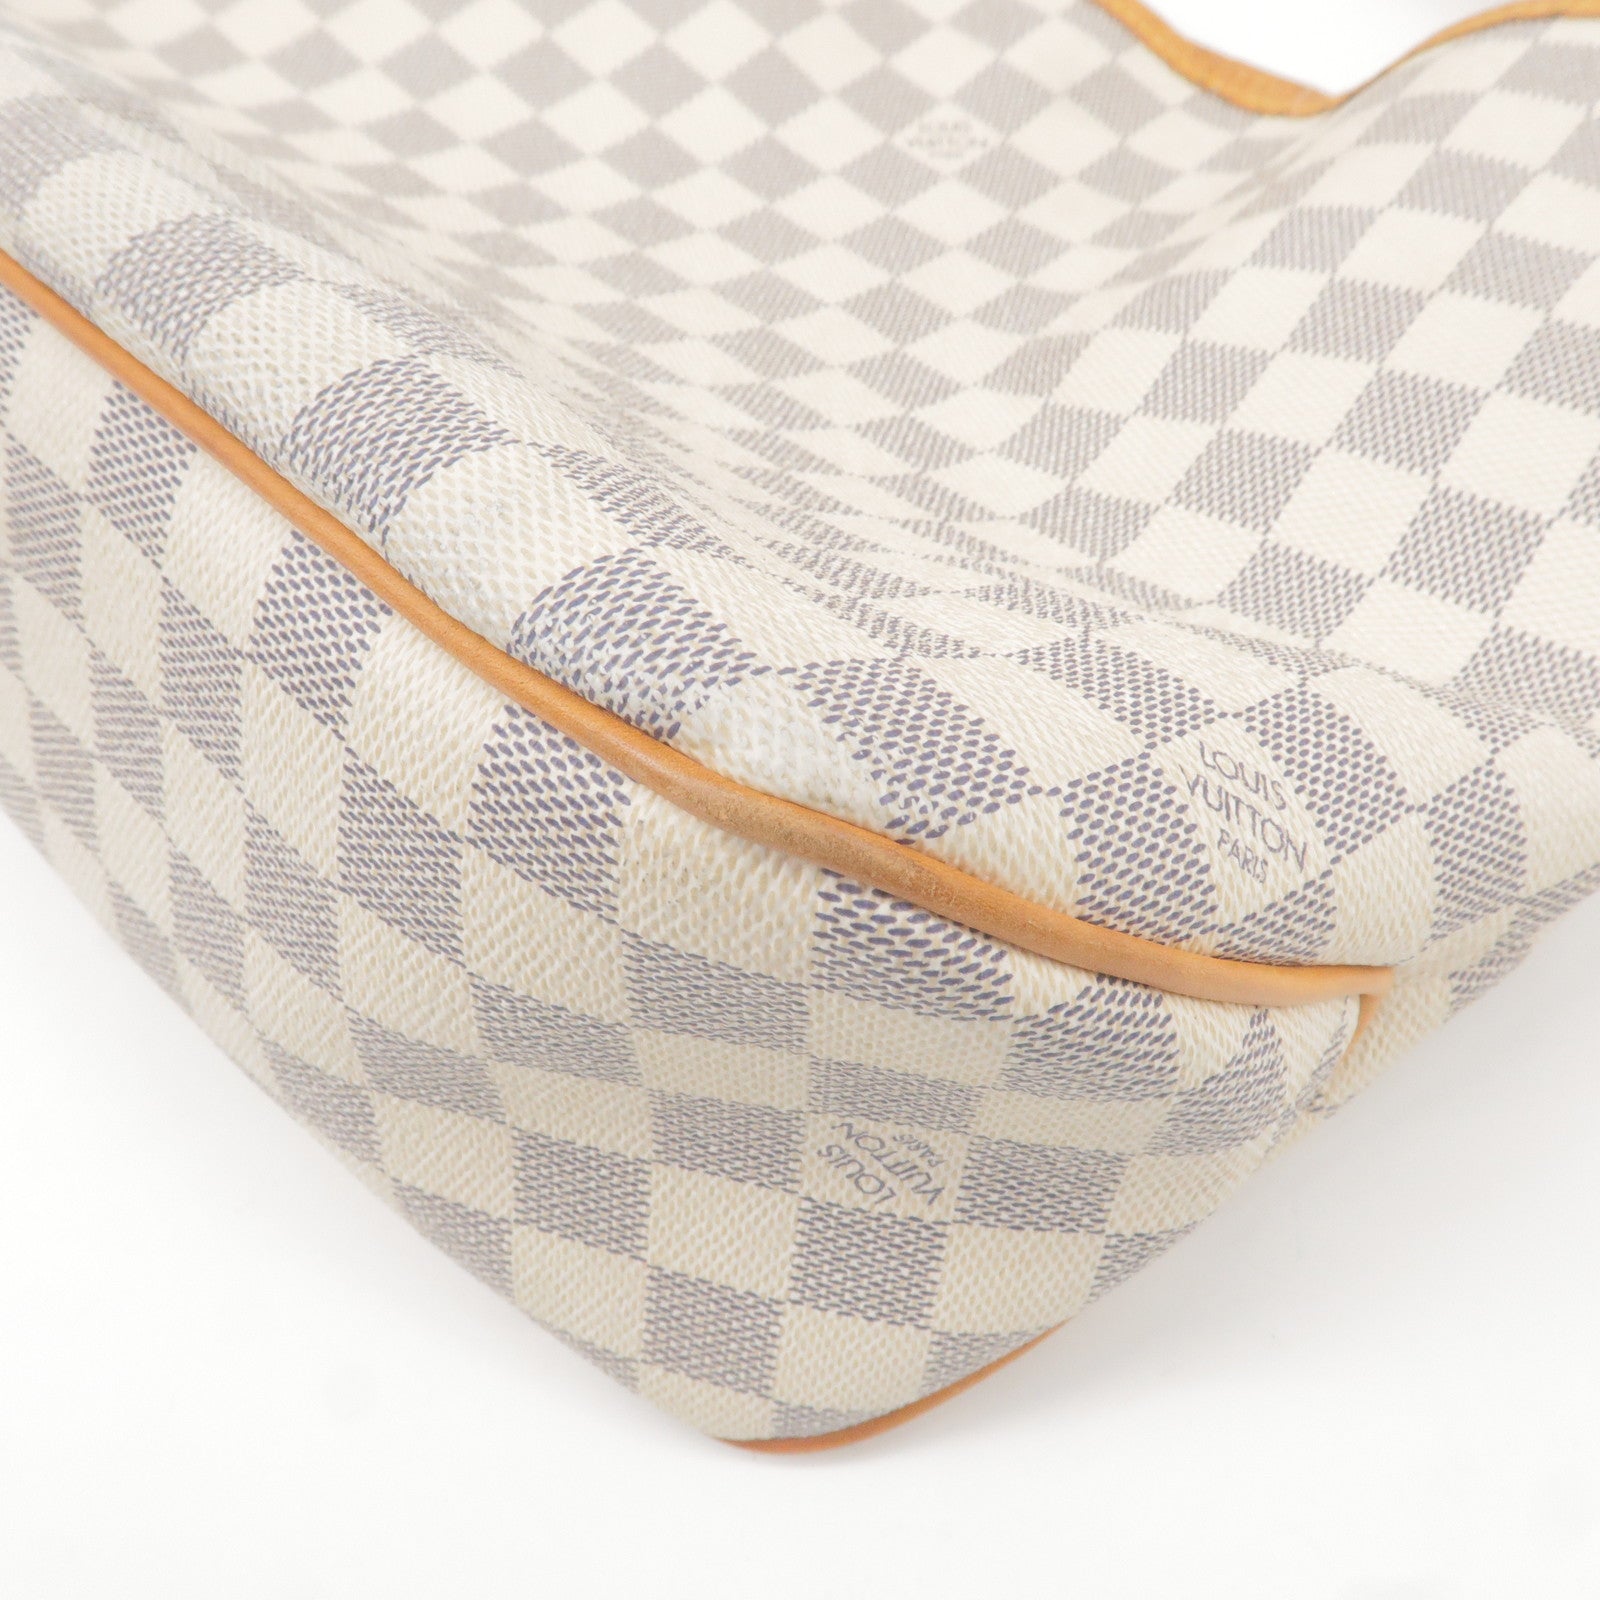 Louis Vuitton Delightful Damier Azur Handbag Purse Review and what